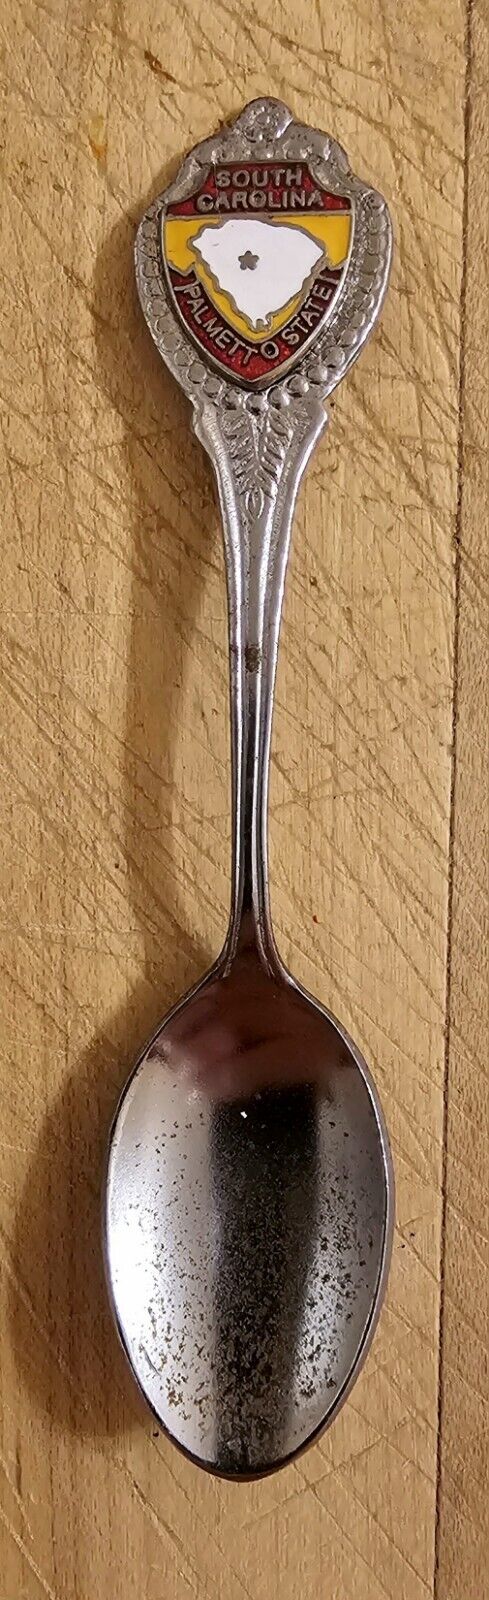 Vintage South Carolina Collector Souvenir Spoon USA